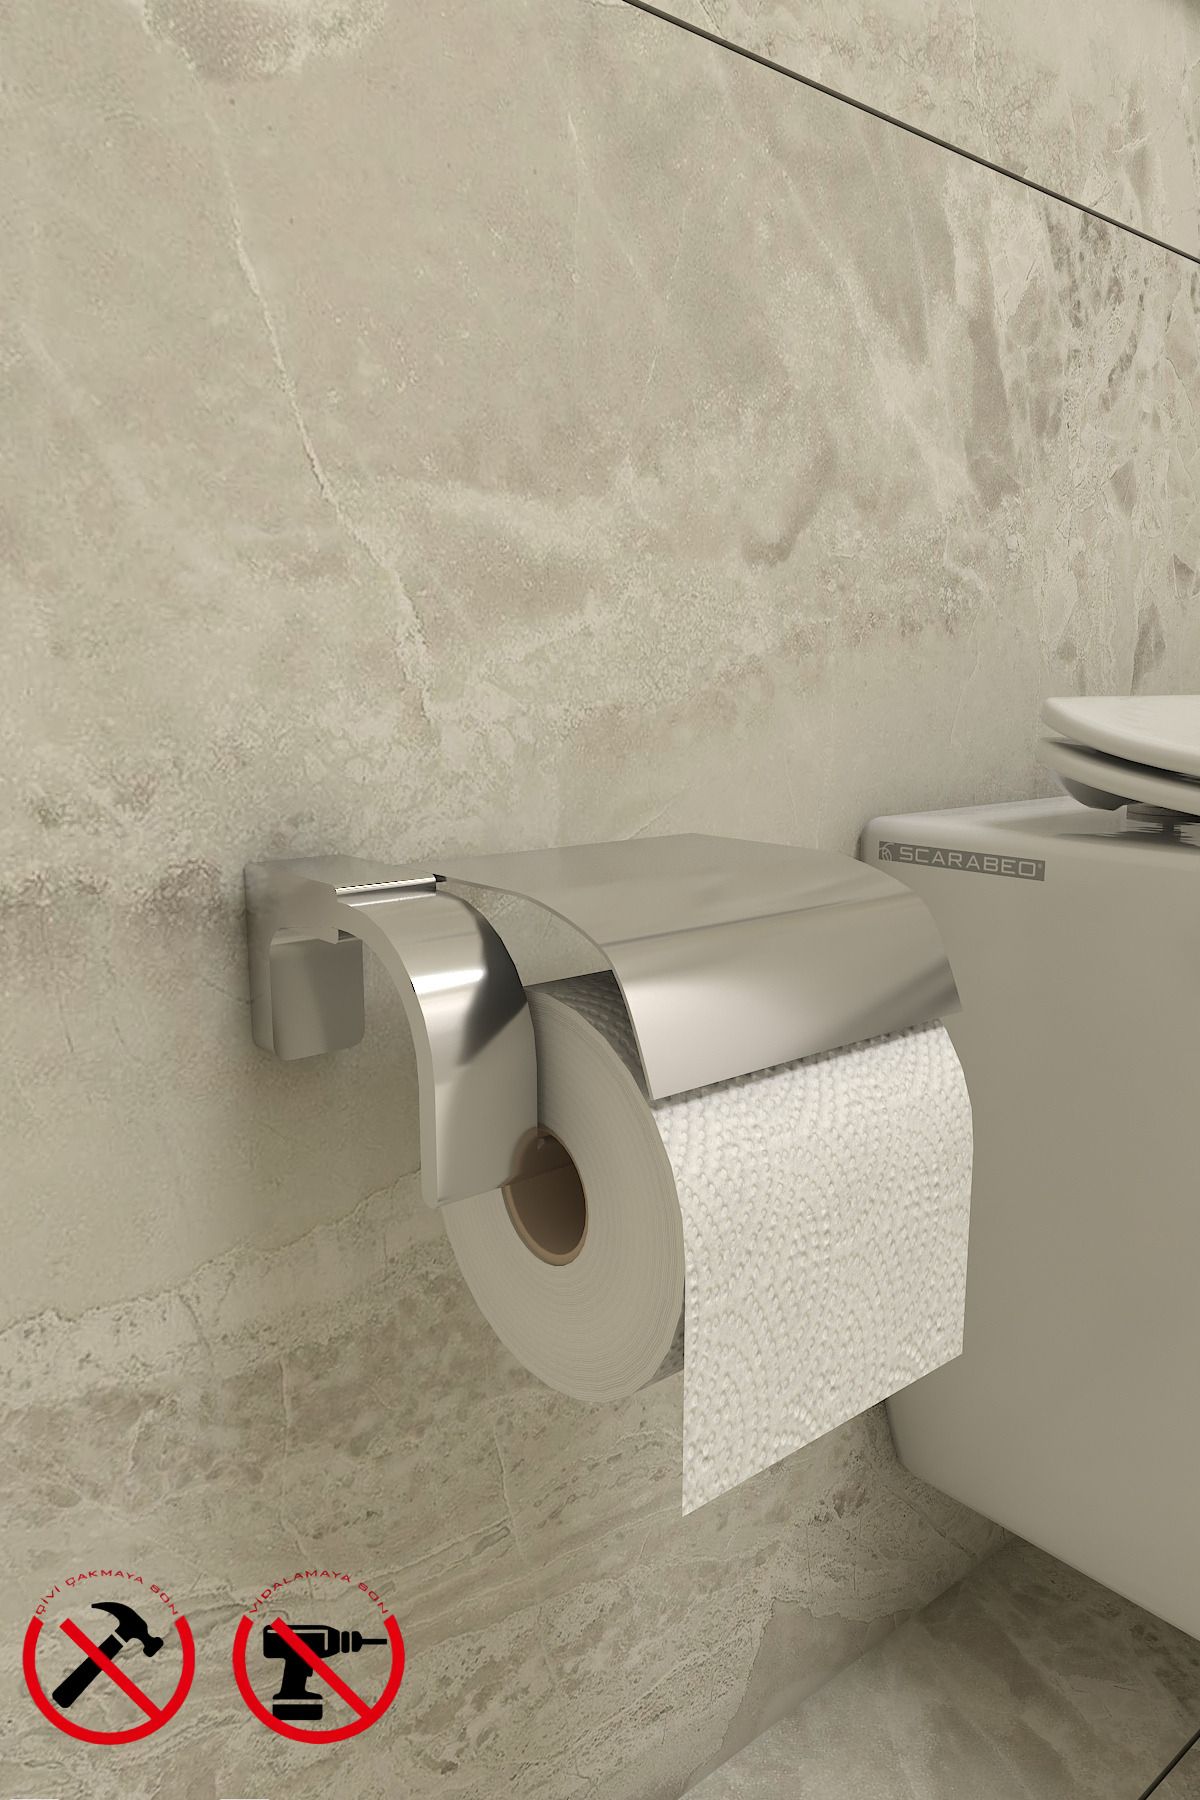 Alper Banyo Krom F1 Model Paslanmaz Kapaklı Tuvalet Kağıdı Askısı Tuvalet Kağıtlığı 5 Yıl Garantili